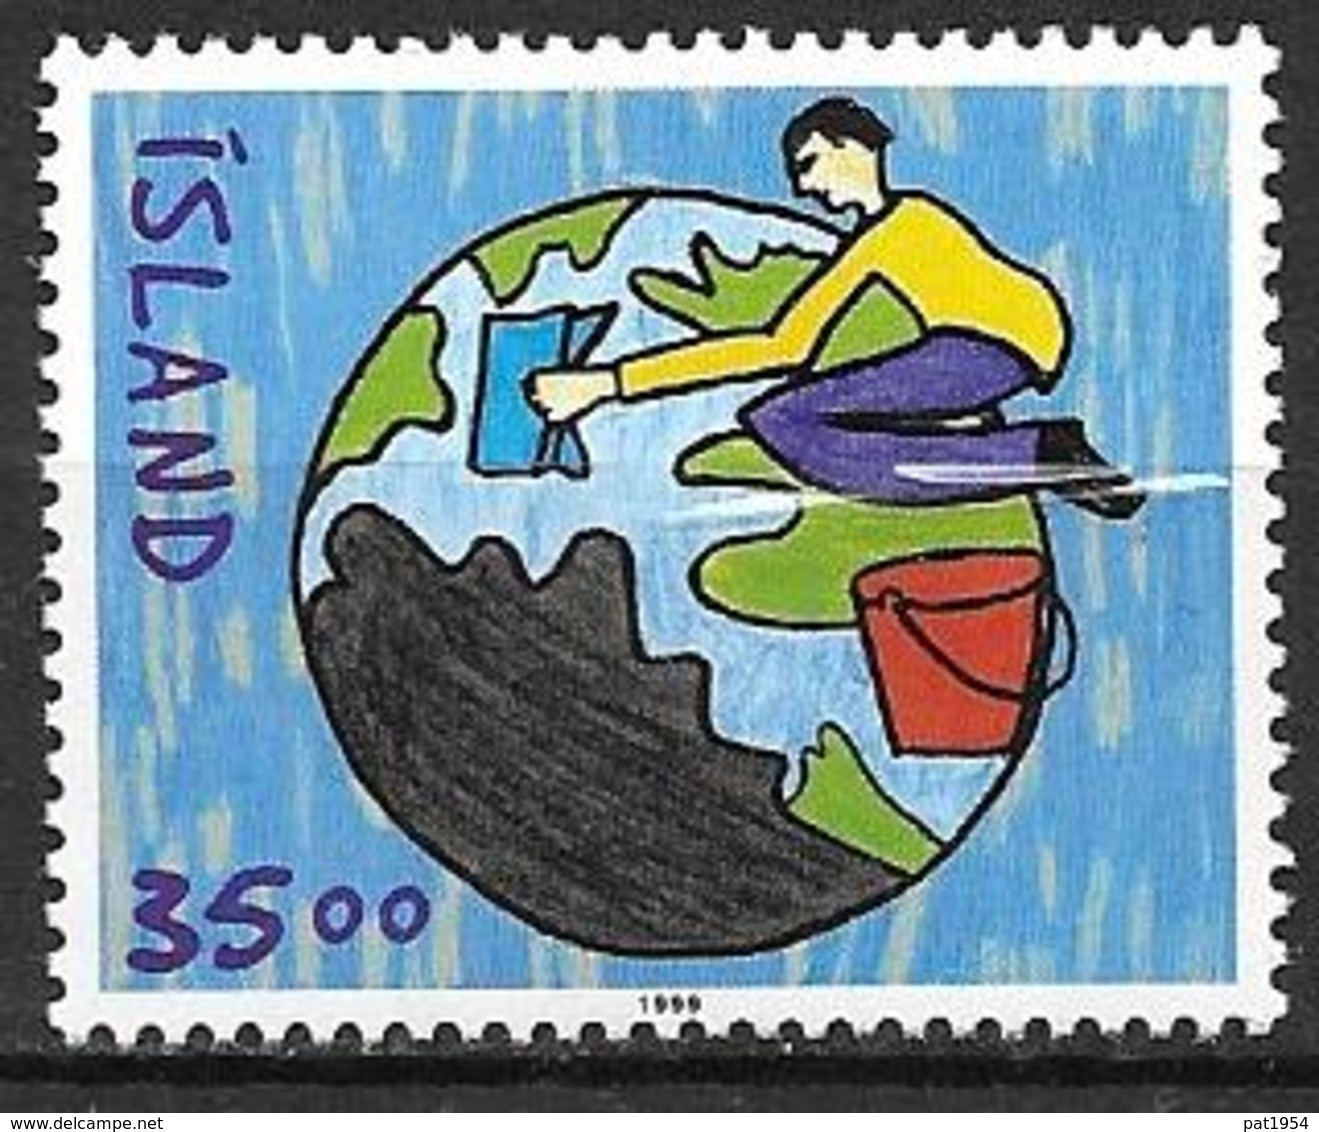 Islande 1999 N°877A Neuf Dessin D'enfants - Neufs